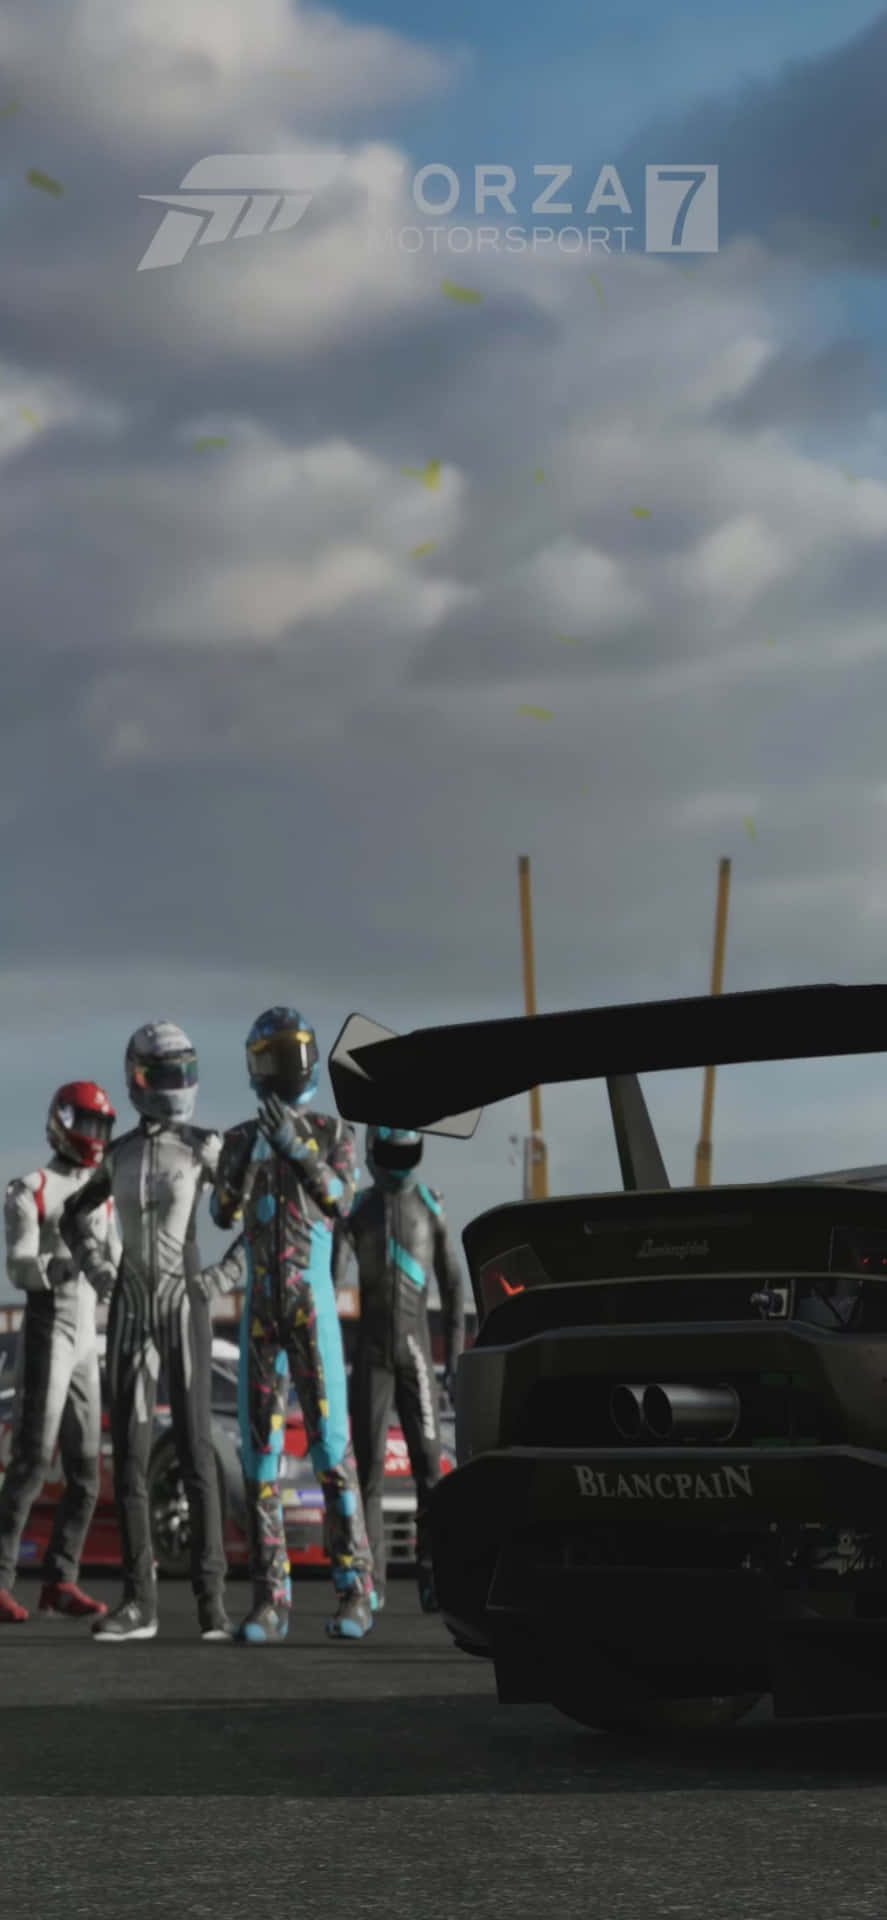 Rideriphone X Bakgrundsbild Från Forza Motorsport 7.